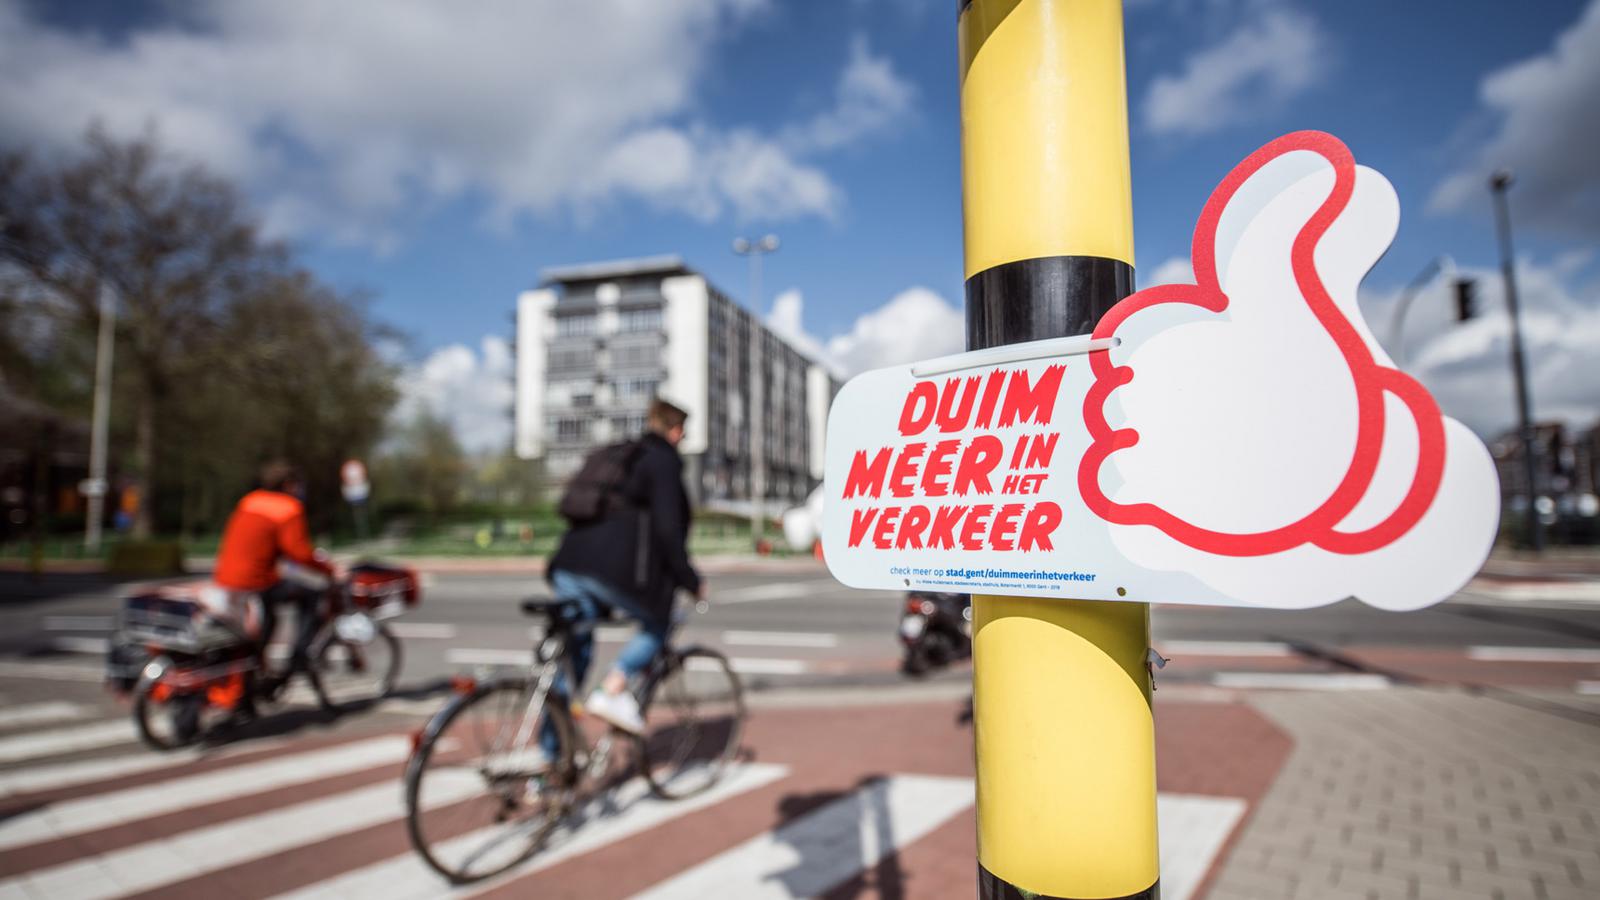 Signalisatie voor de hoffelijkheidscampagne 'Duim meer in het verkeer' voor Stad Gent